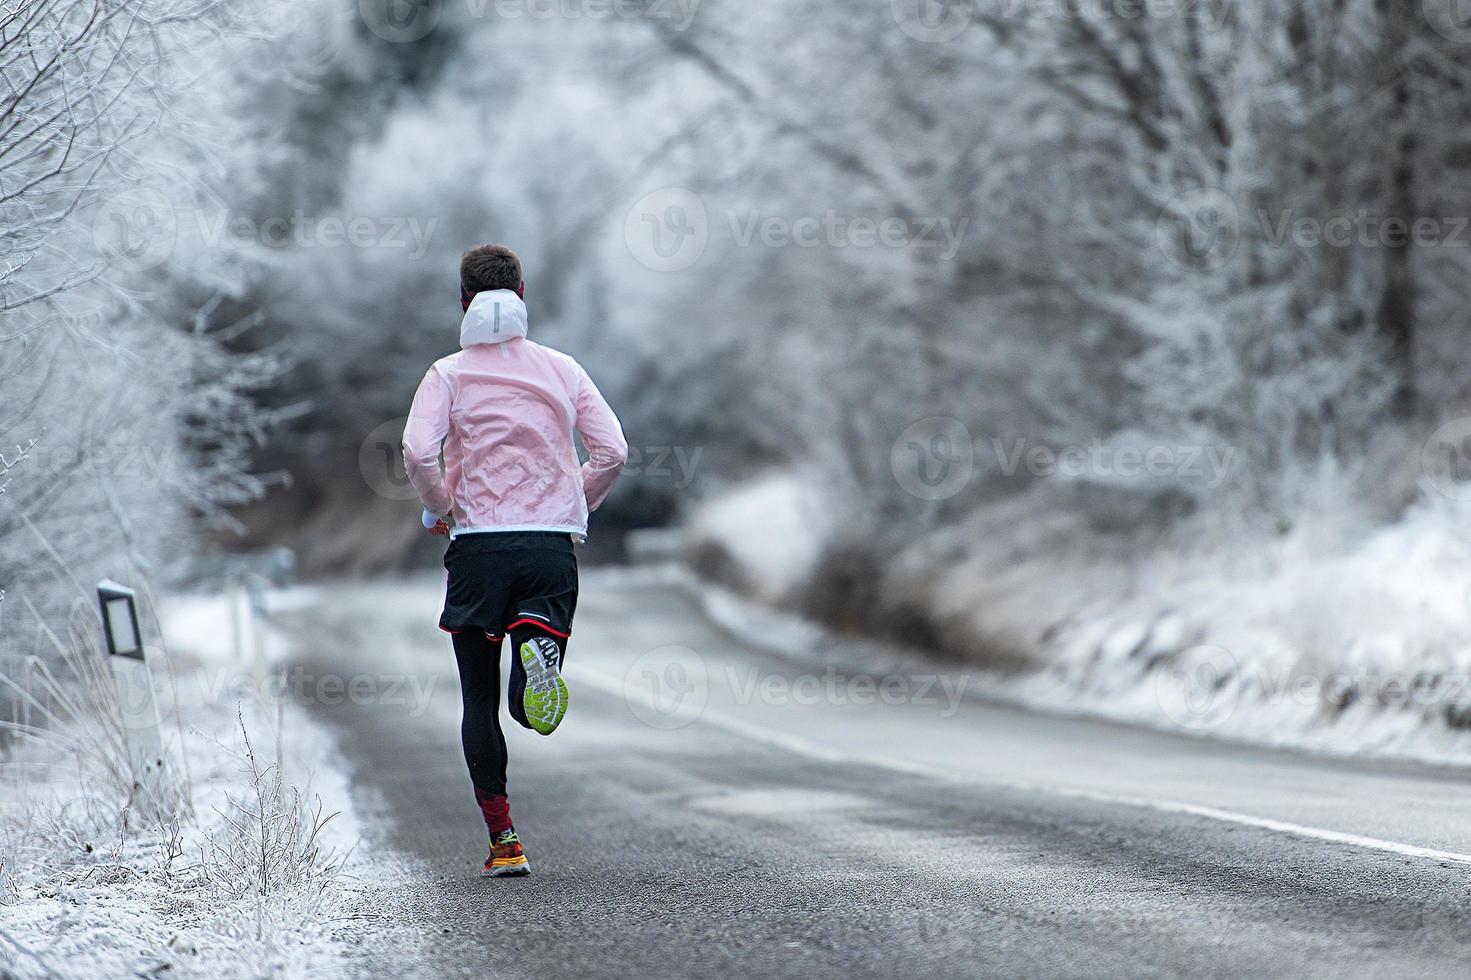 corredor durante o treinamento em estrada gelada no inverno foto